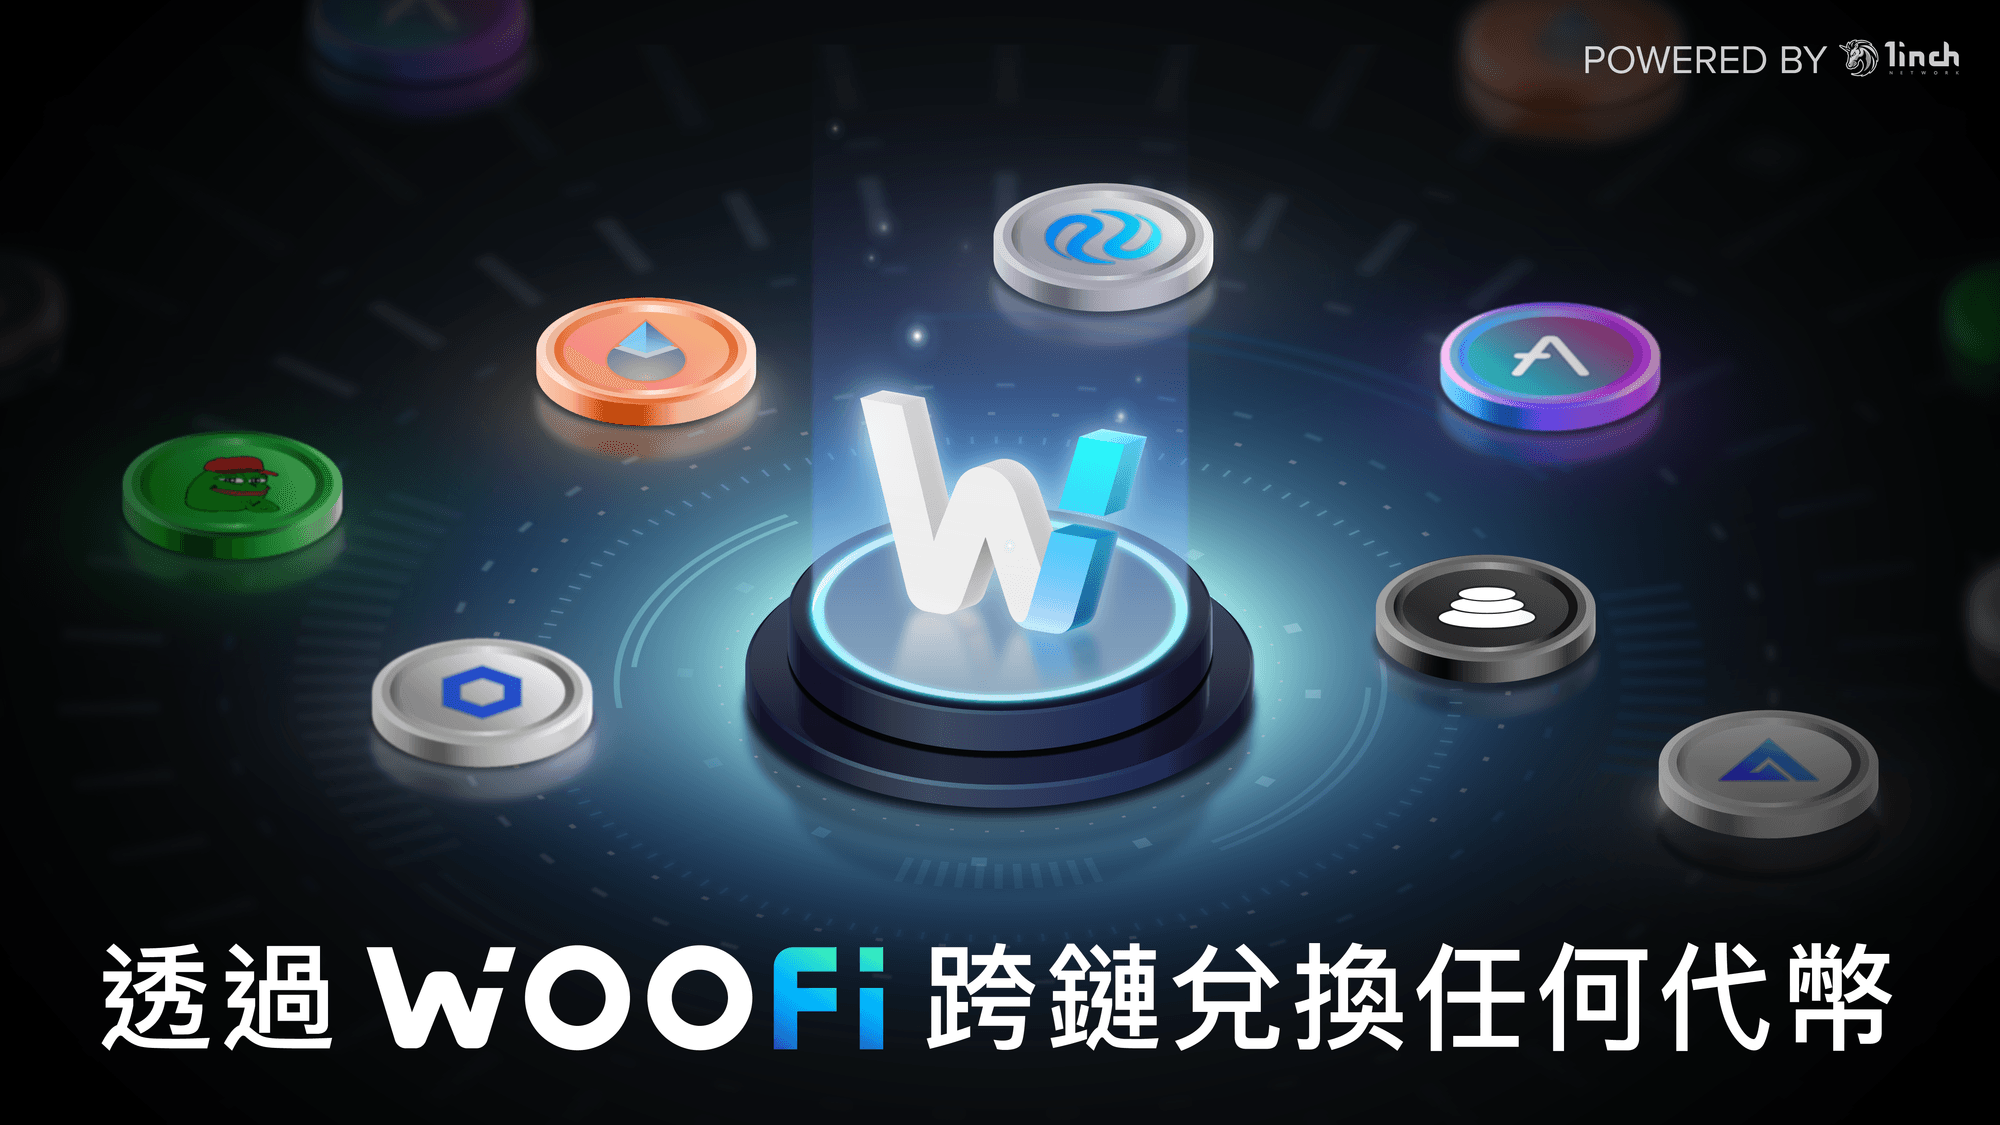 WOOFi 跨鏈兌換現已支援數千種資產